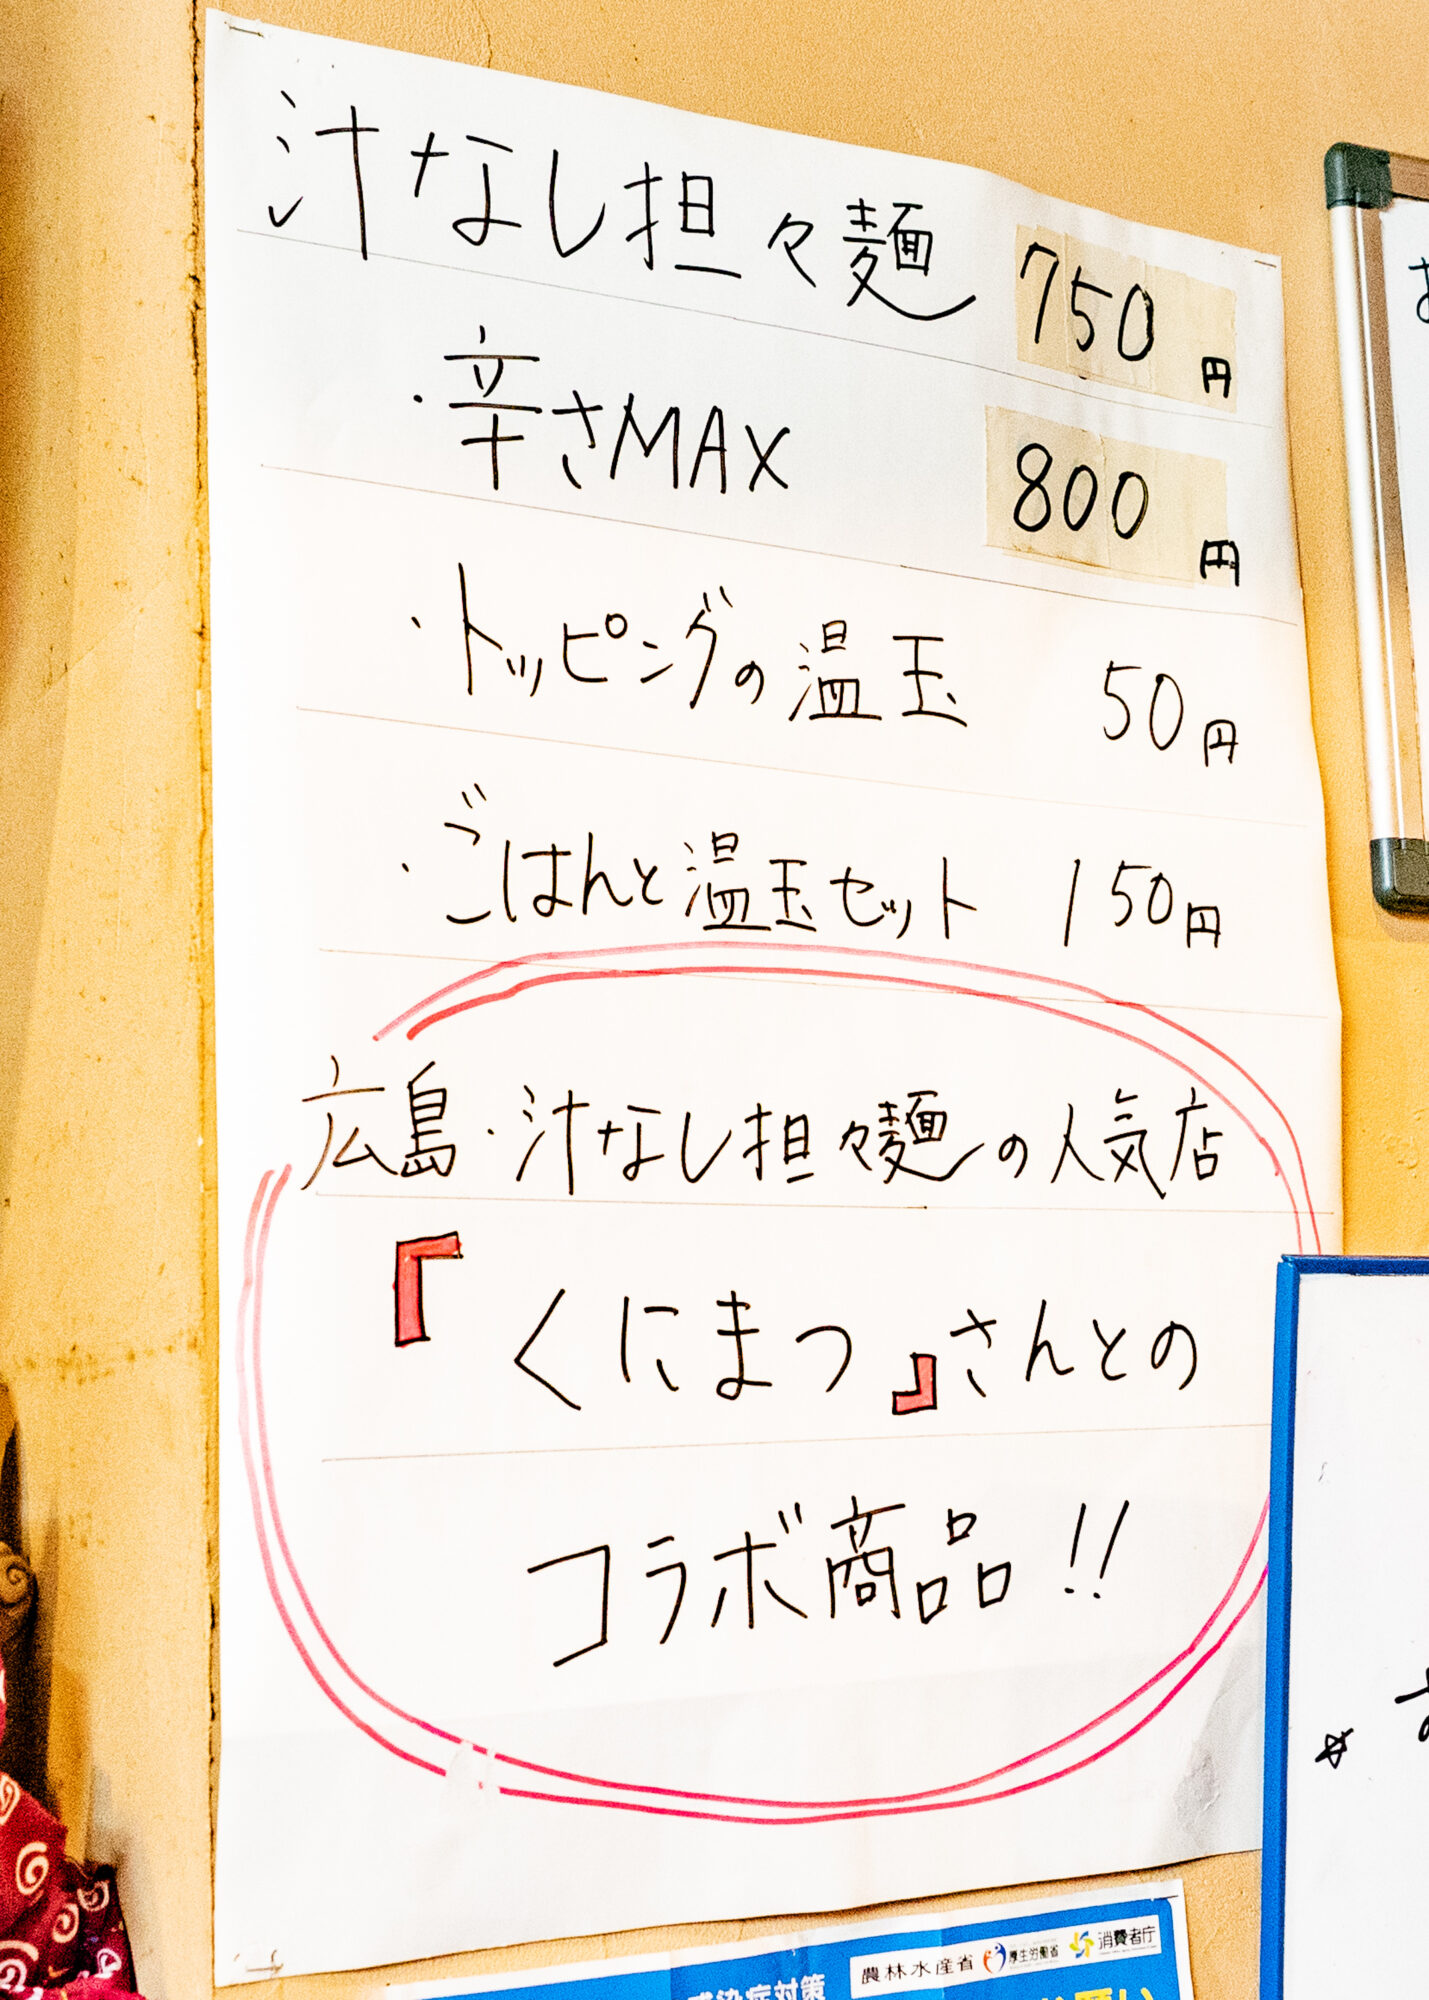 「汁無し担々麺」もあり、なんと「広島市の名店「くにまつ」とのコラボレーション